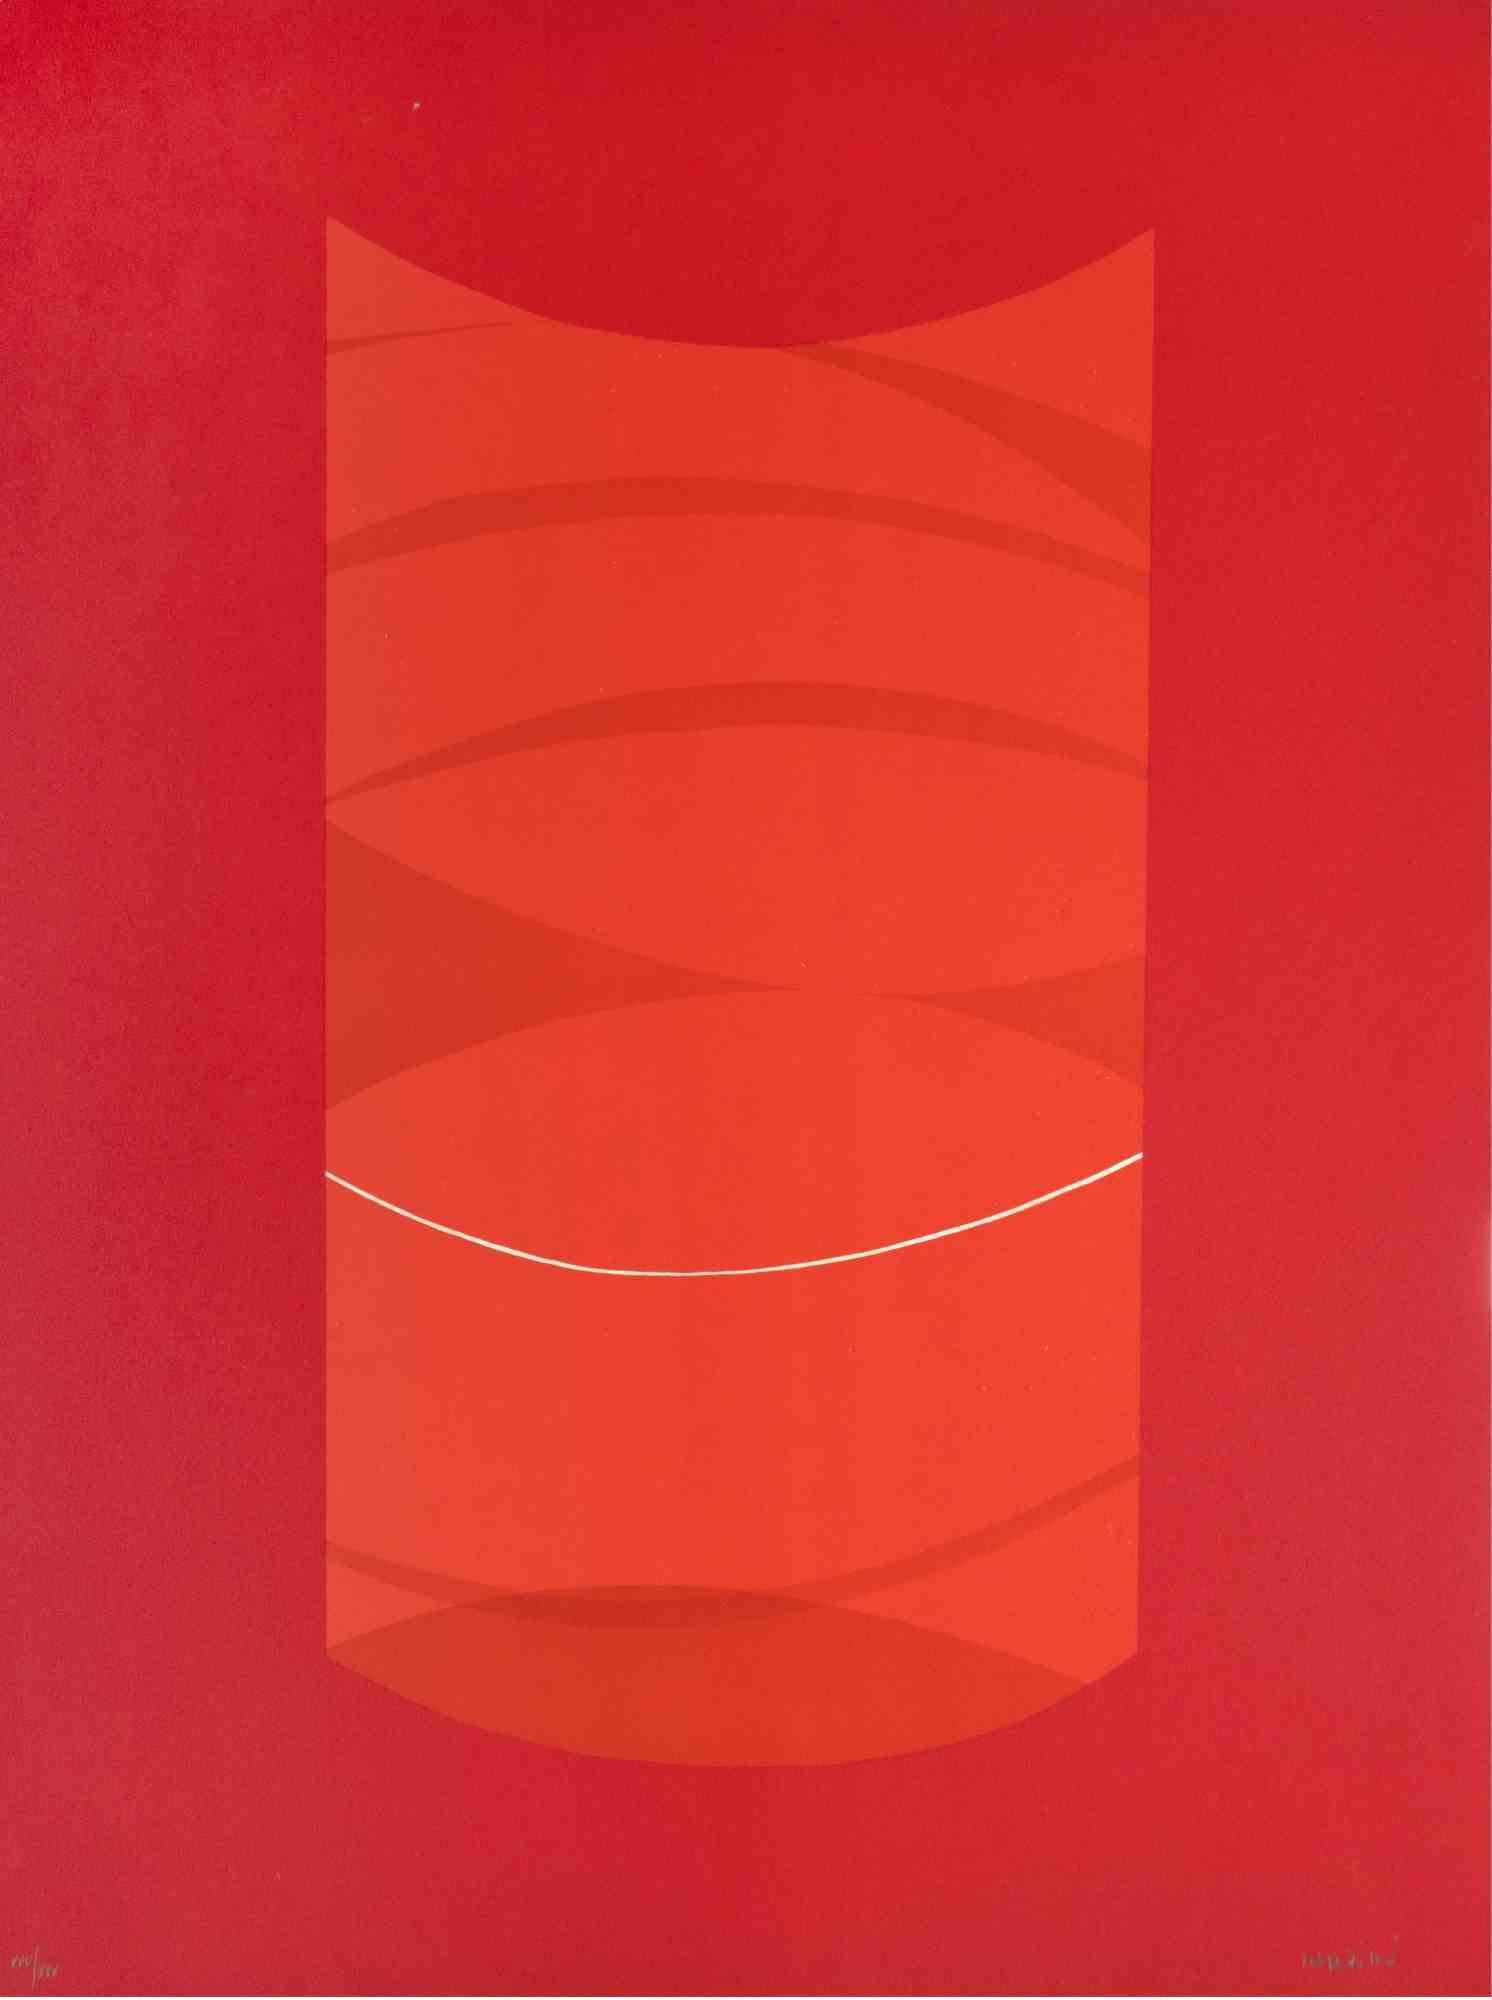 Red One est une œuvre d'art contemporain réalisée par Lorenzo Indrimi dans les années 1970.

Lithographie en couleurs mélangées.

Signé à la main et daté dans la marge inférieure.

Edition de XXV/XXX